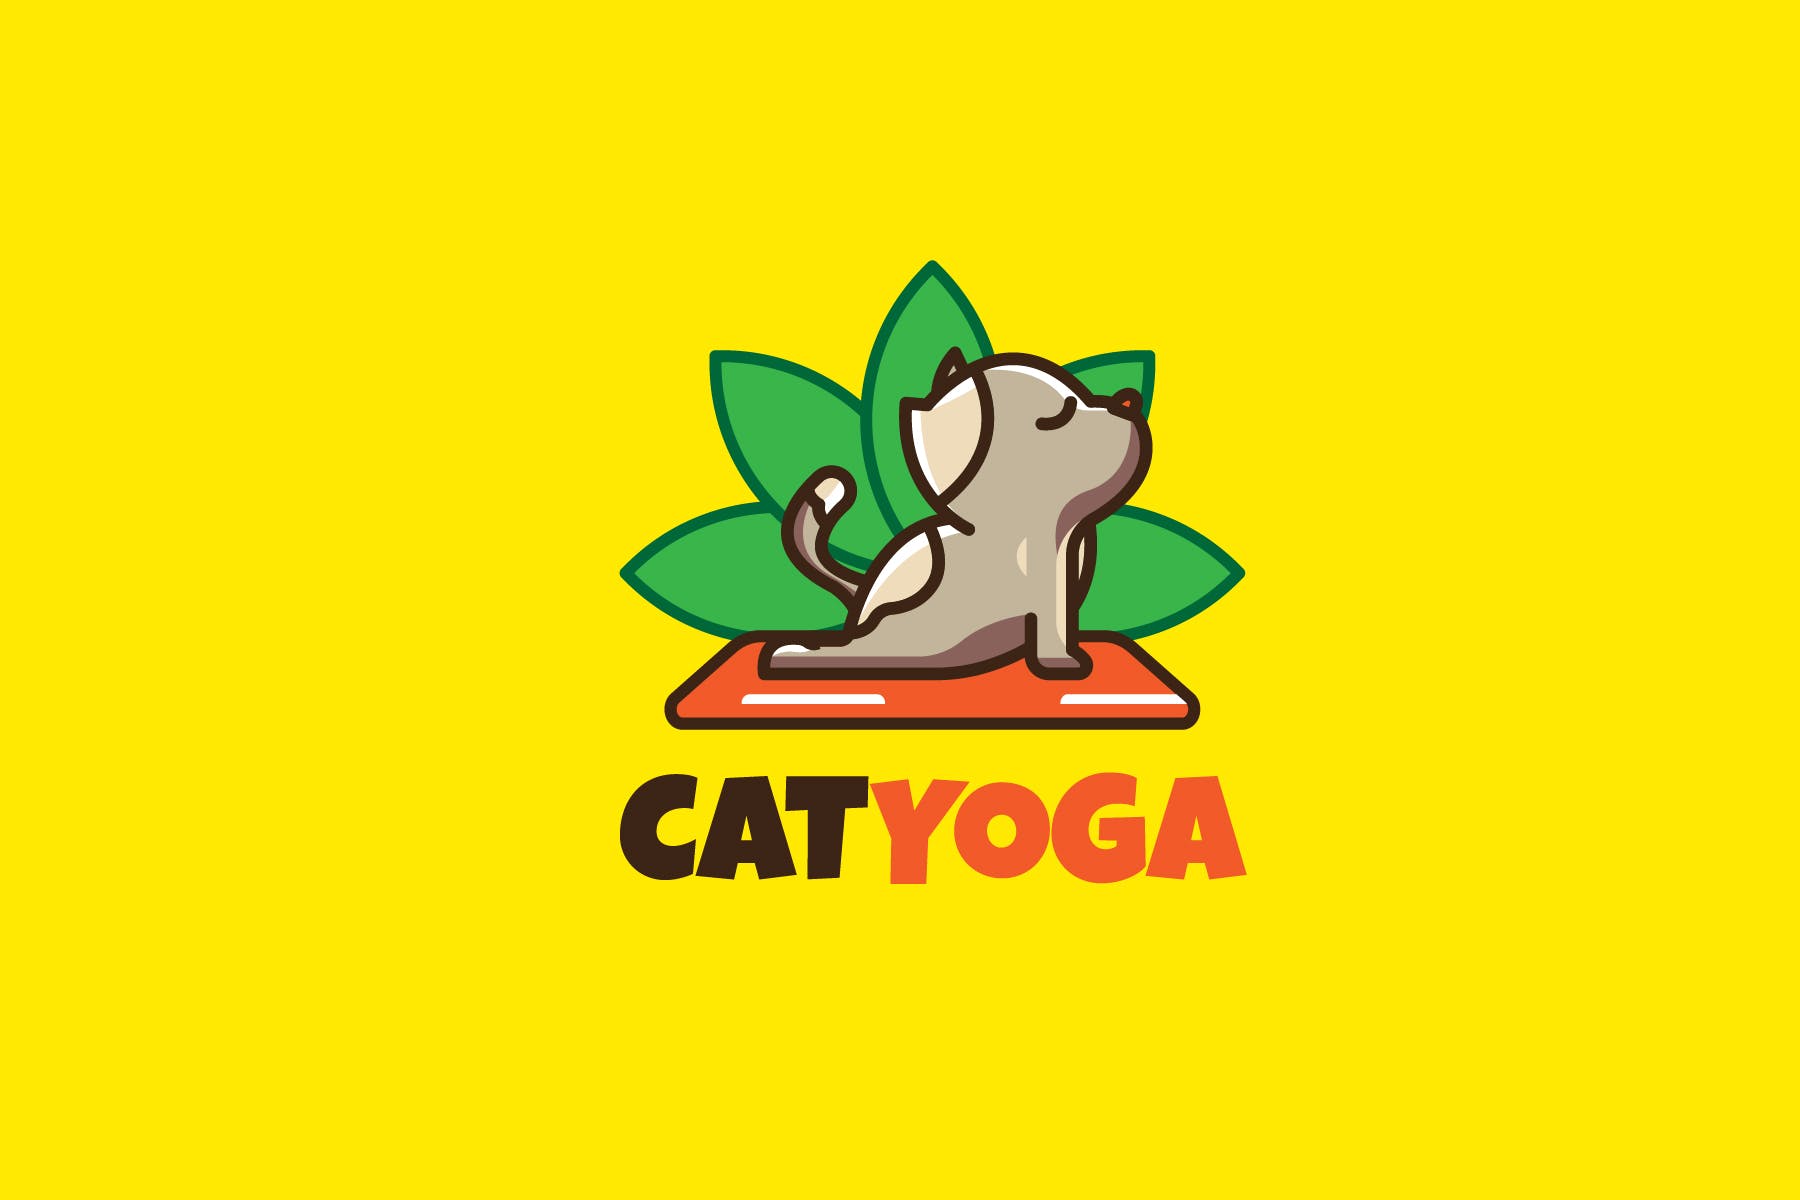 瑜伽猫咪卡通形象瑜伽品牌Logo设计第一素材精选模板 CAT YOGA – Mascot & Esport Logo插图